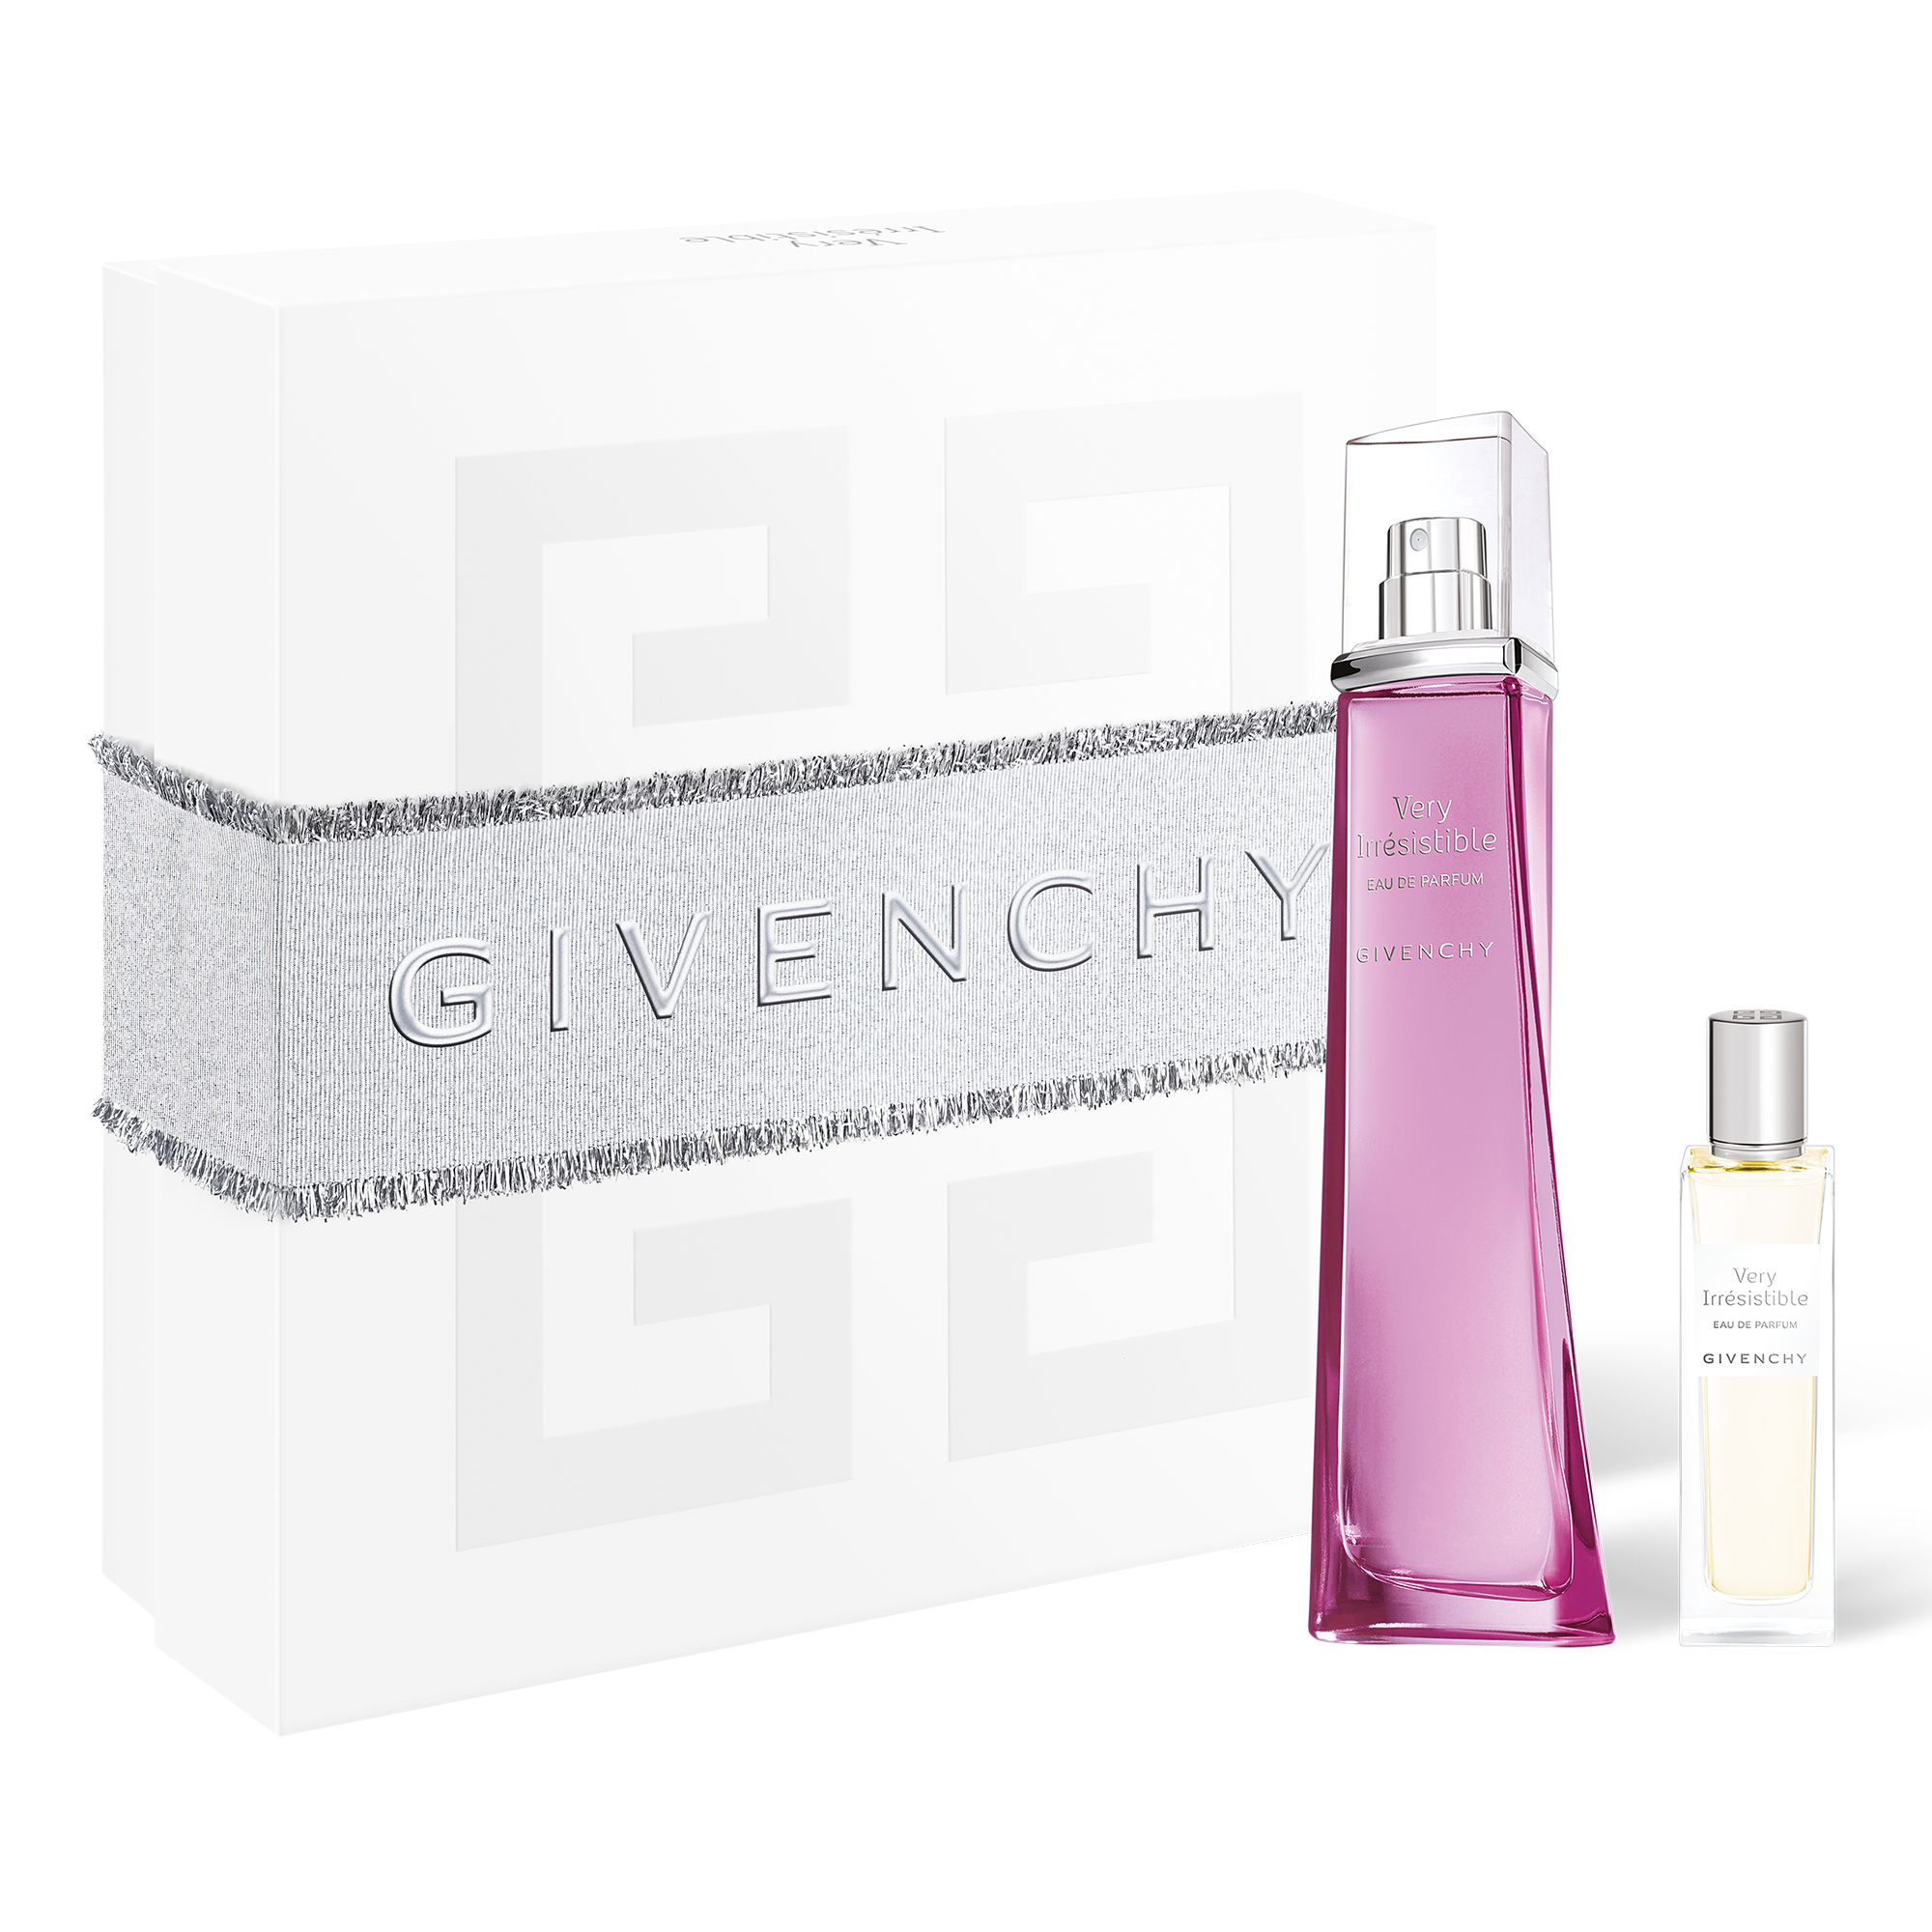 VERY IRRÉSISTIBLE EAU DE PARFUM | GIVENCHY BEAUTY - EAU DE PARFUM - GIFT SET  | Givenchy Beauty